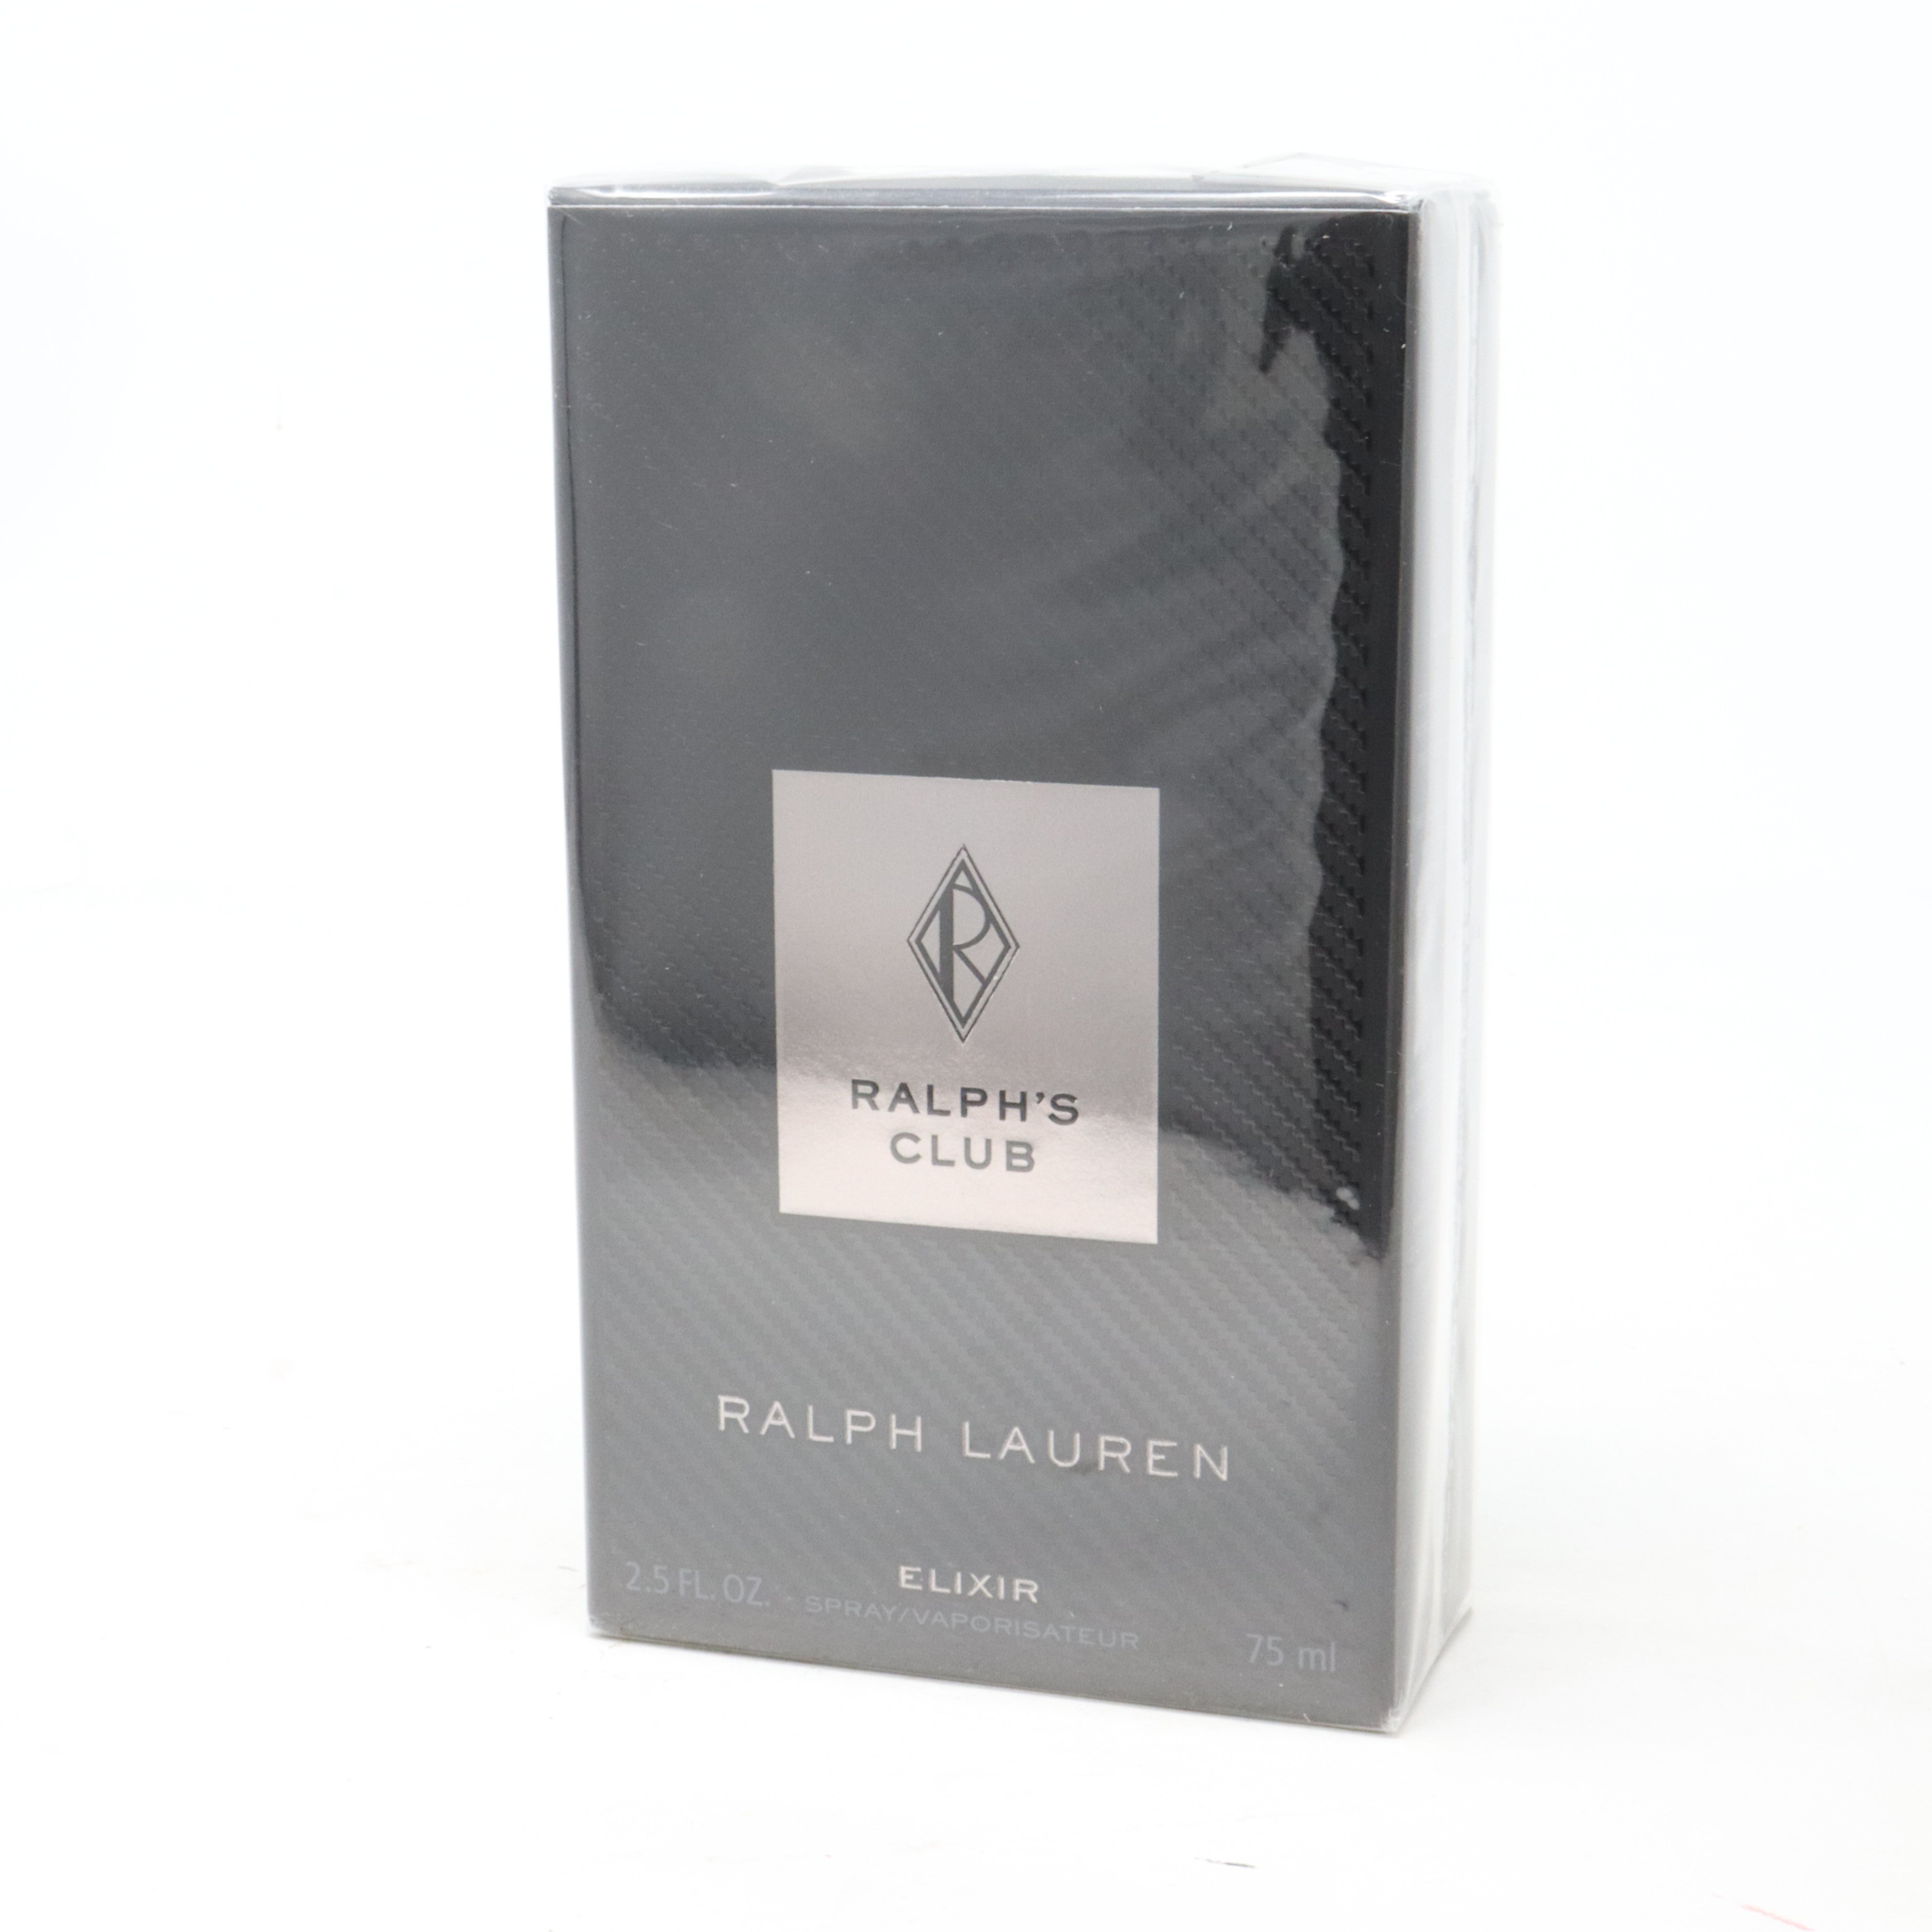 Ralph Lauren Ralph's Club Elixir 75 ml – Eaudeluxe